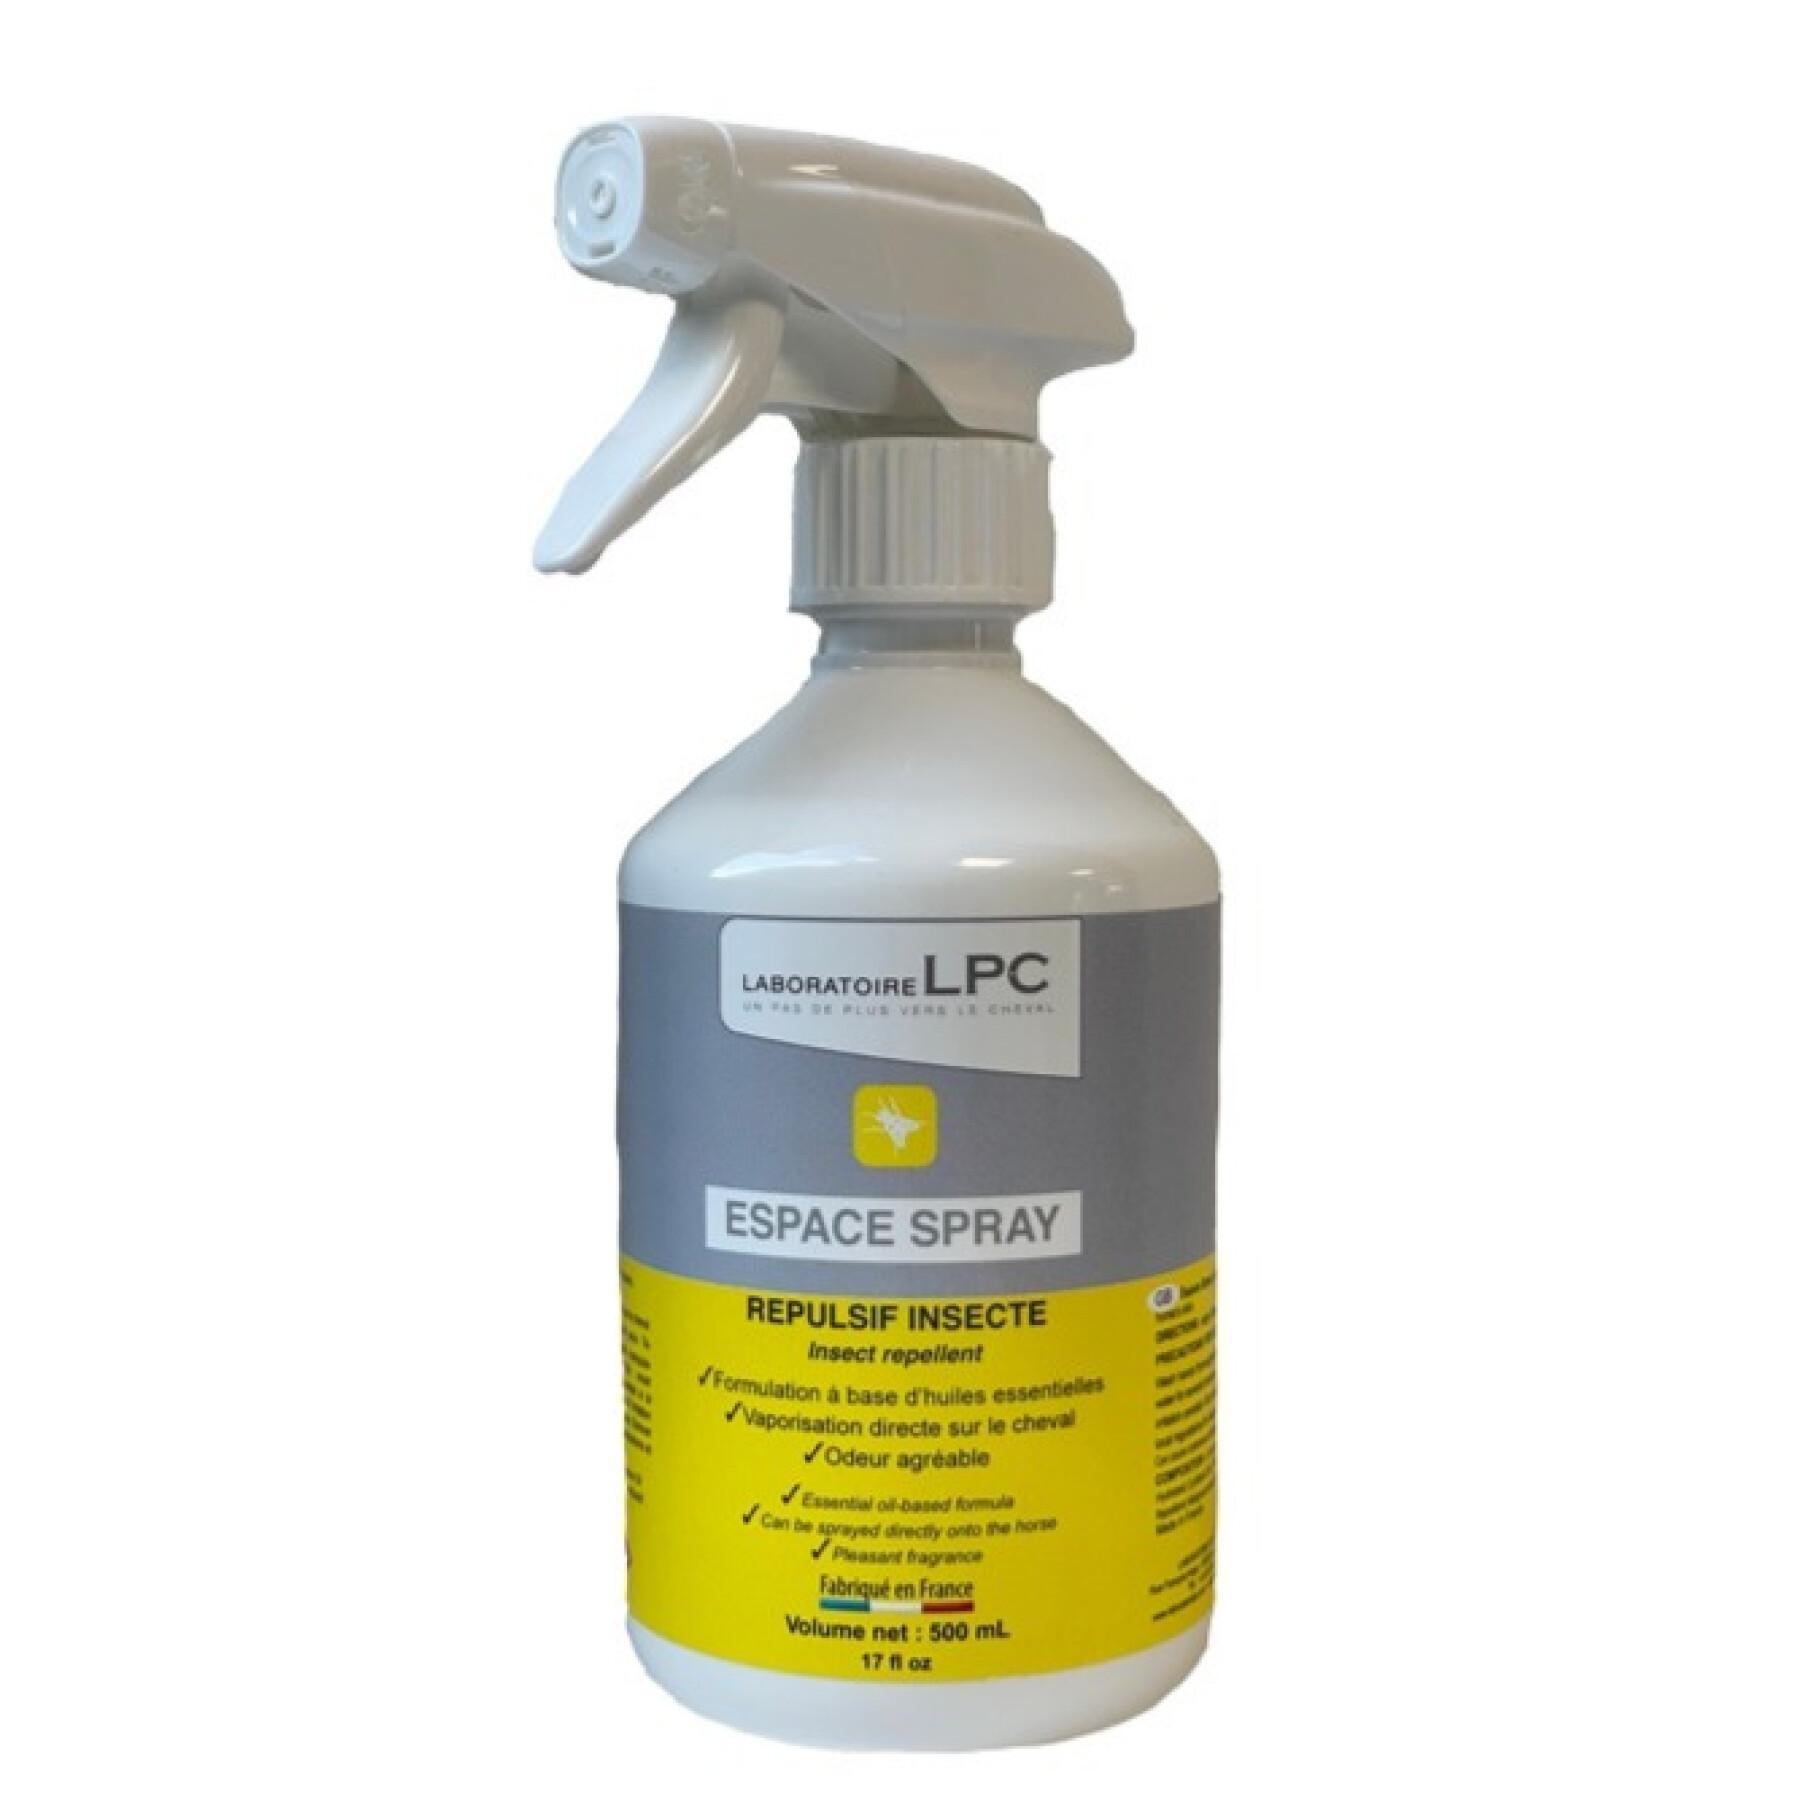 Anti-insectenspray voor paarden LPC Espace spray